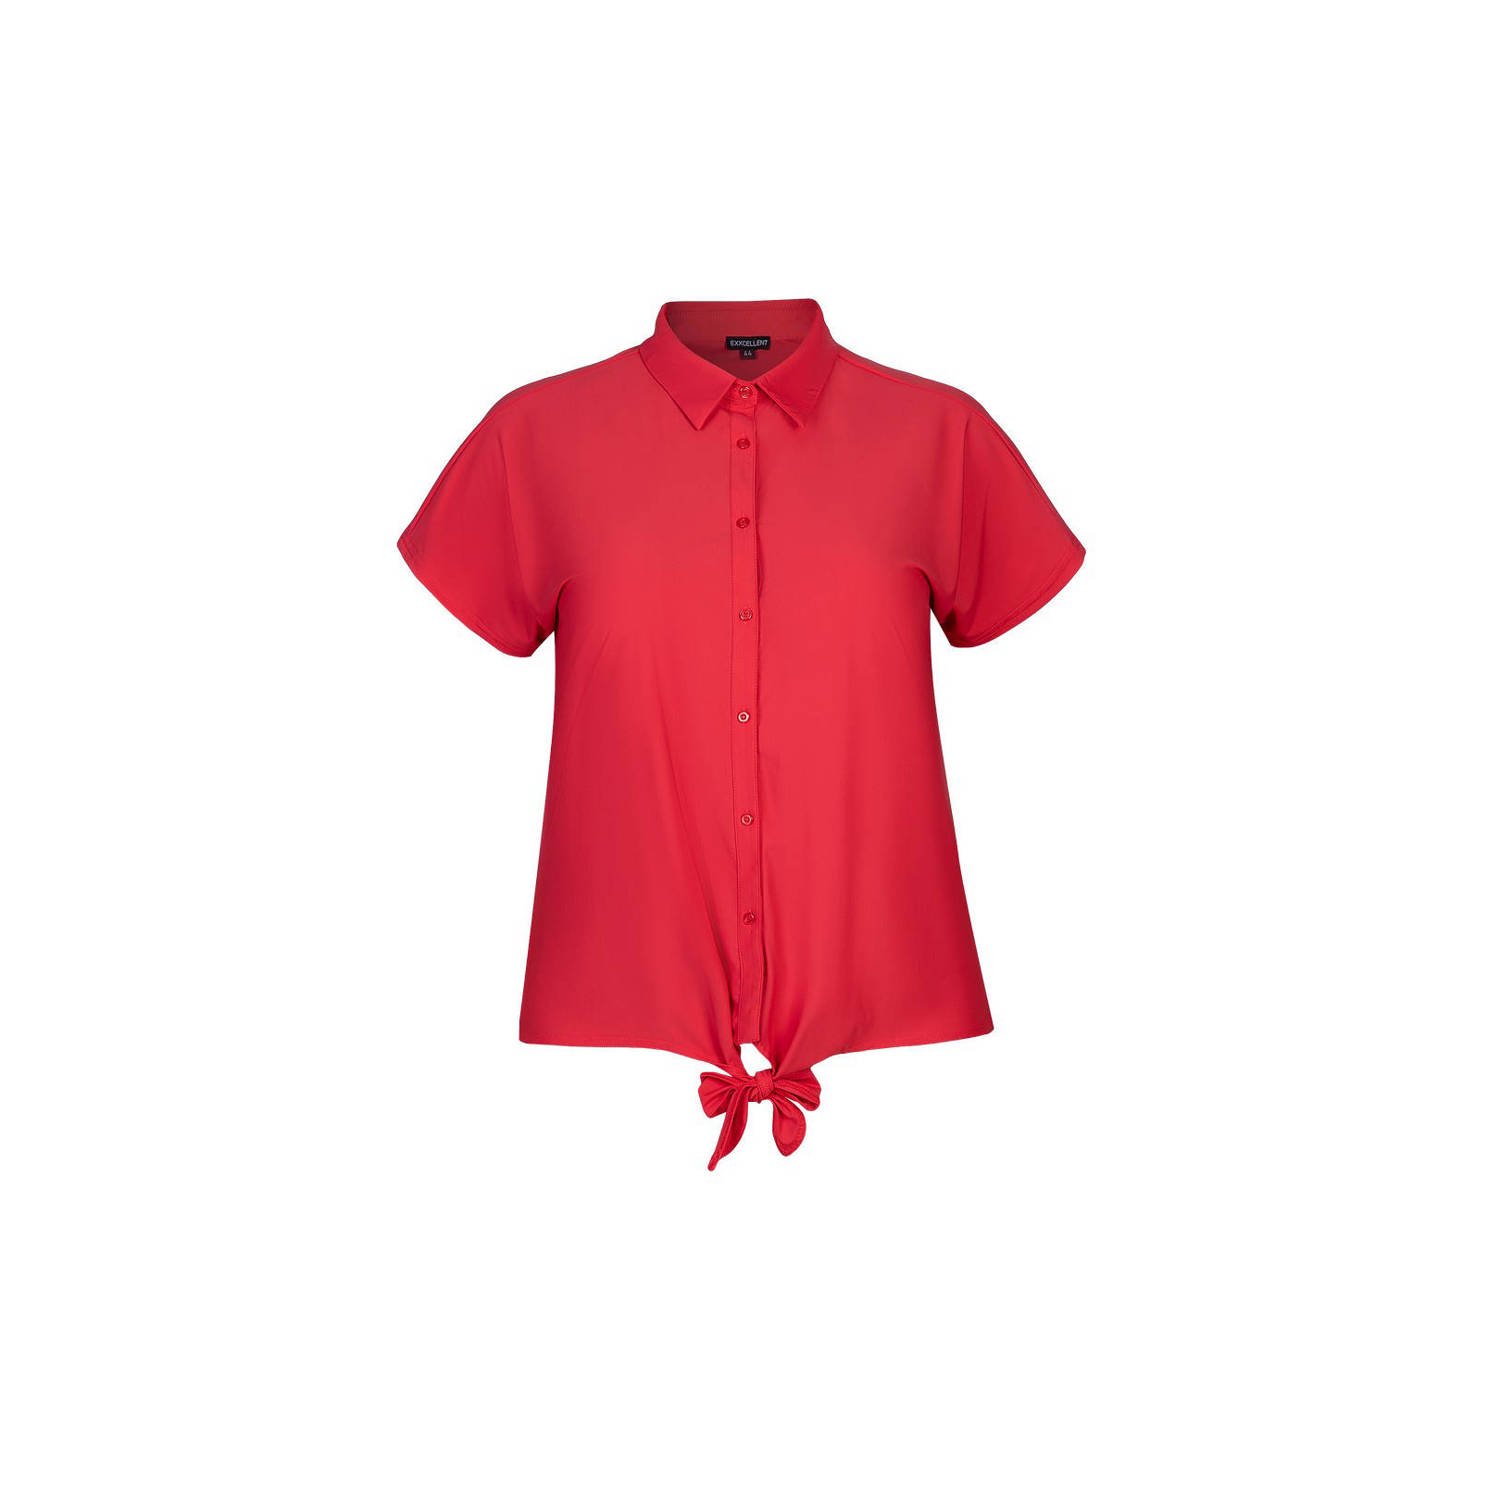 Exxcellent blouse van travelstof rood